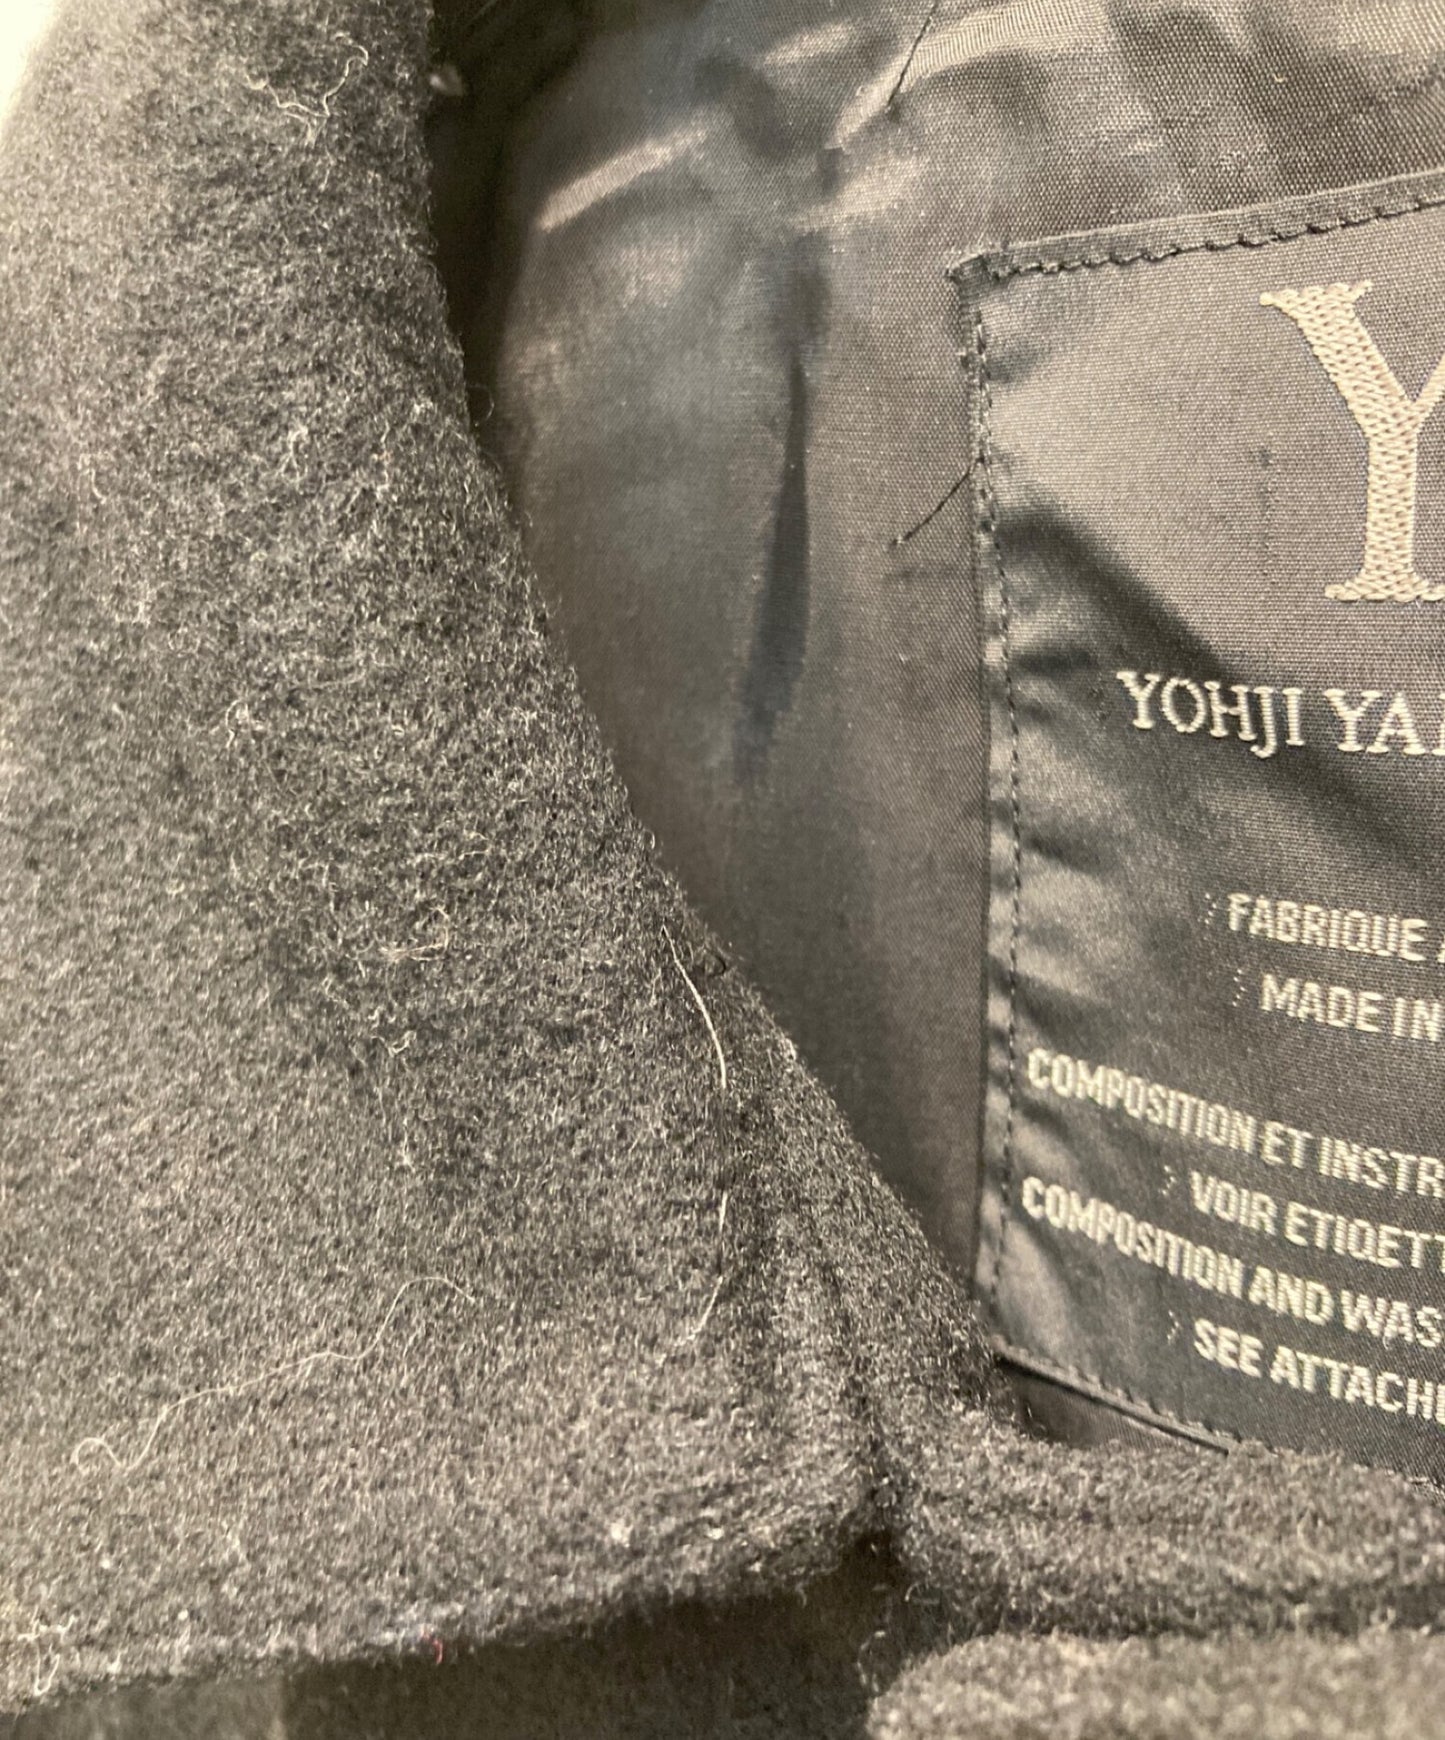 [Pre-owned] YOHJI YAMAMOTO Stenkarrer Coat / Woolen Coat / Long Coat YN-CO2-192